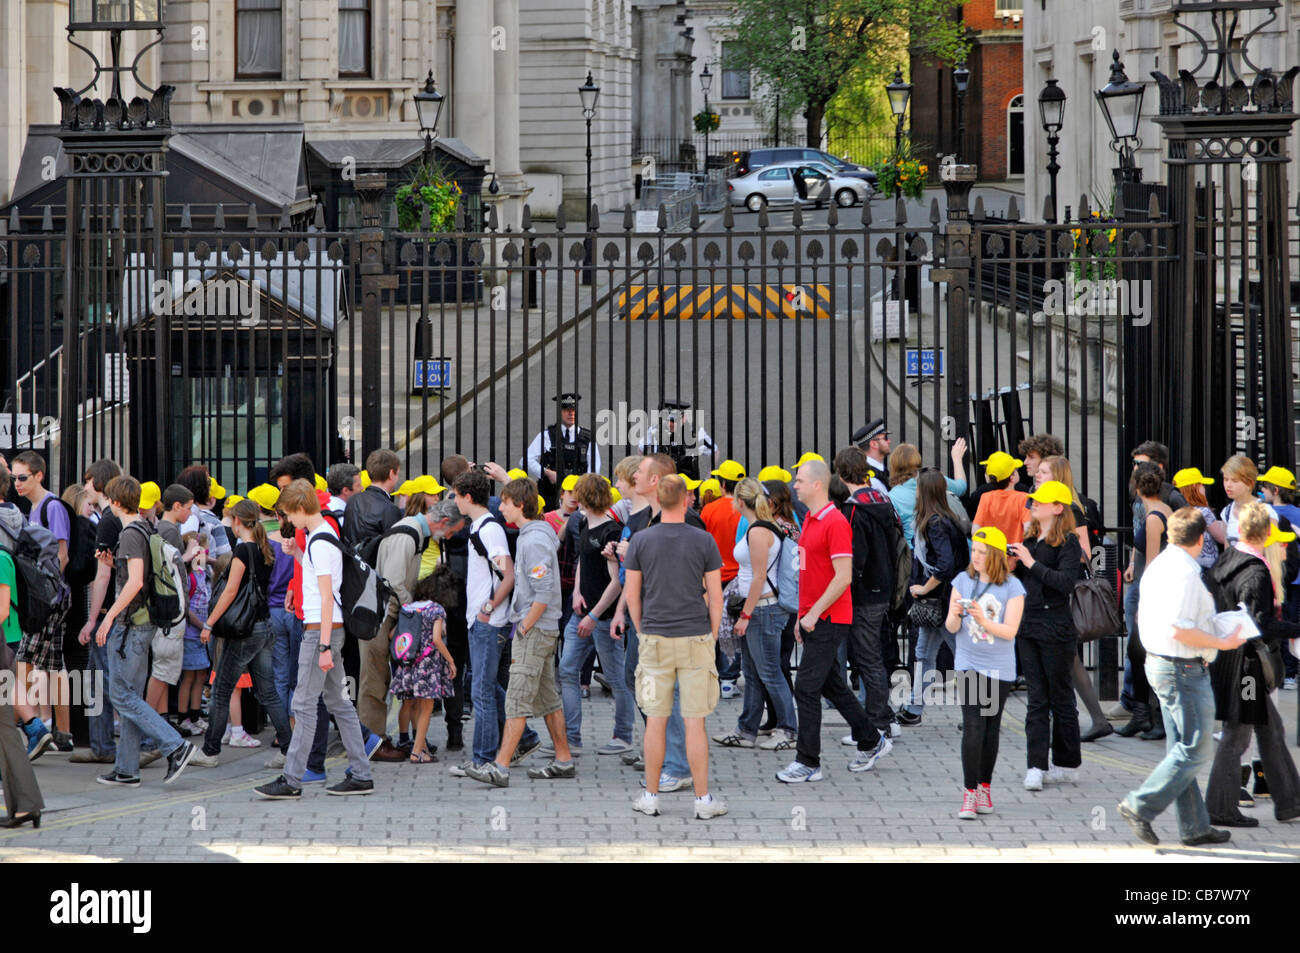 Les agents de la police métropolitaine de Londres derrière la barrière de sécurité protègent l'accès à 10 Downing Street les touristes & groupe d'écoliers en majuscules Whitehall UK Banque D'Images